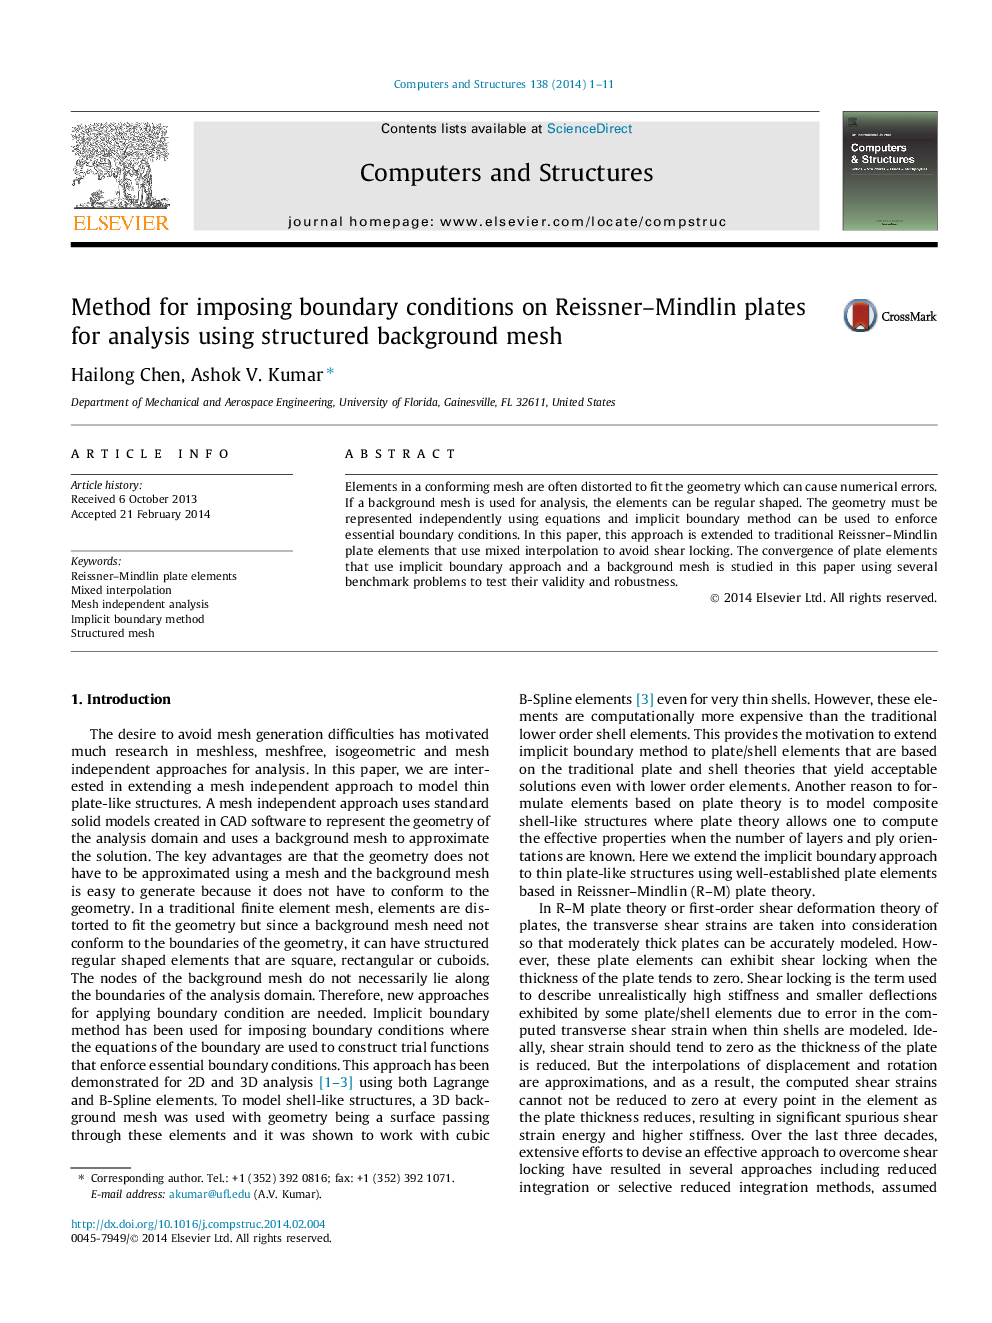 روش برای اعمال شرایط مرزی بر روی صفحات ریسنر-مندلین برای تجزیه و تحلیل با استفاده از مش بافت ساختار یافته 